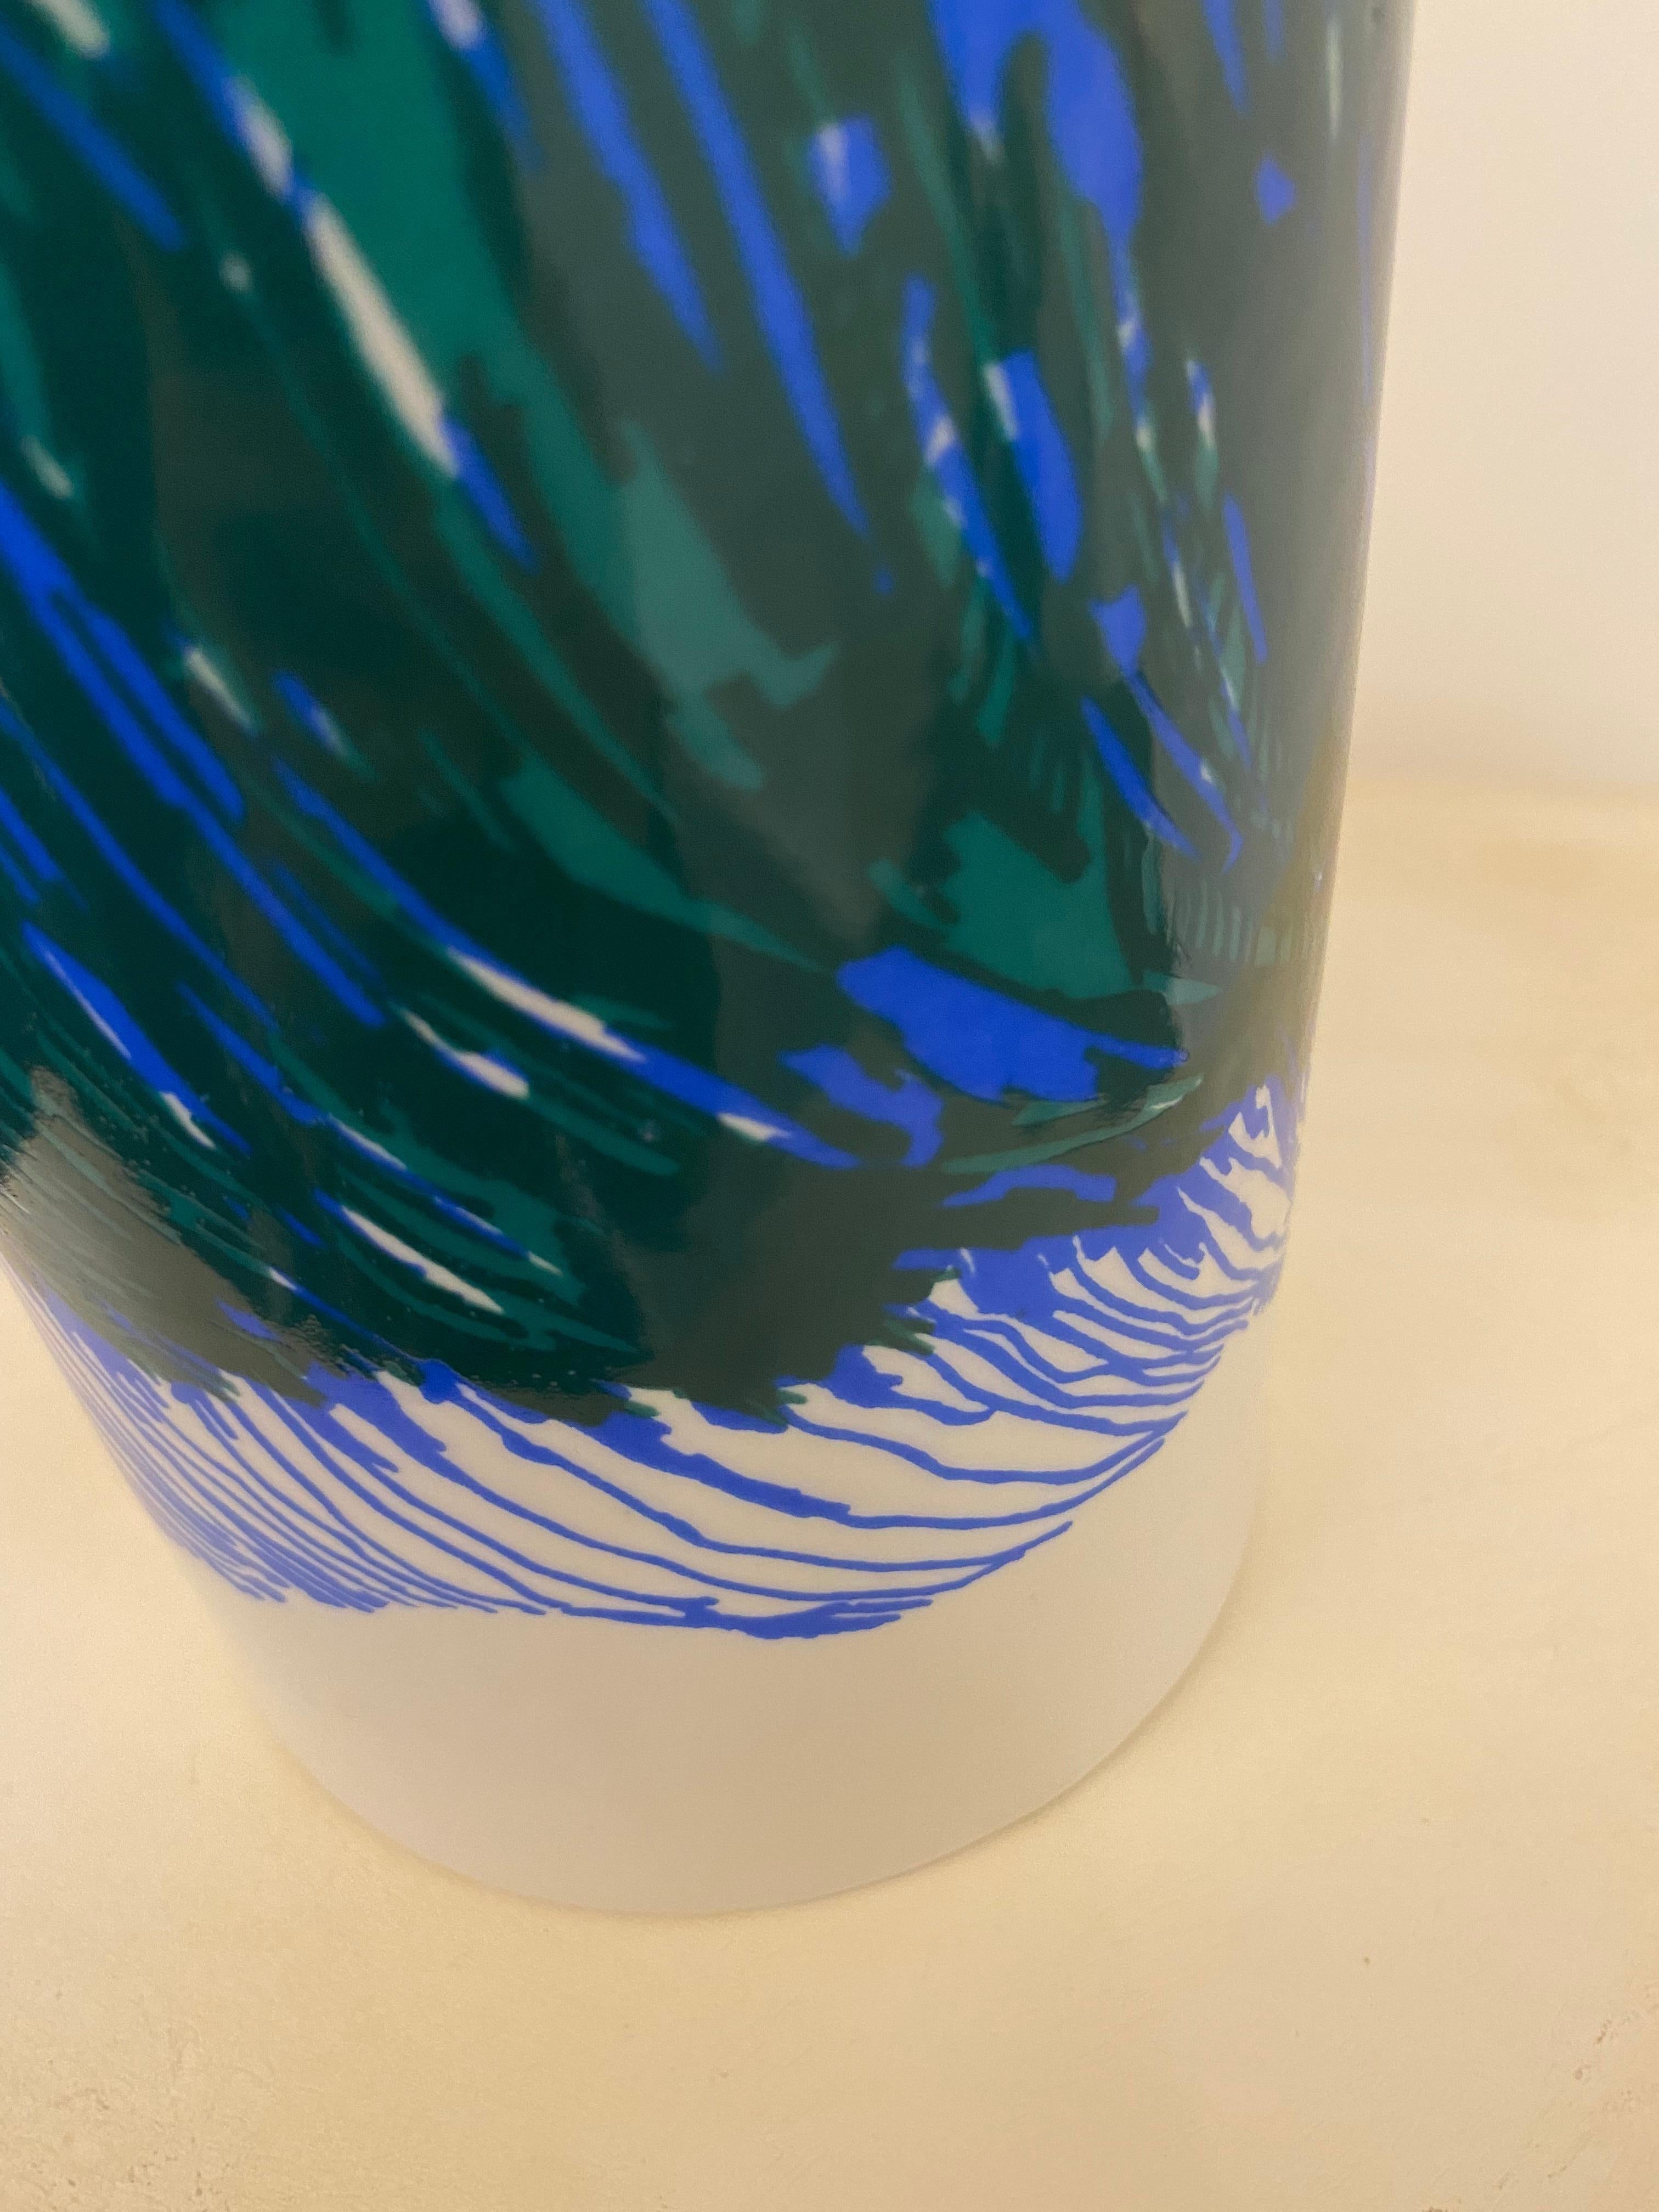 Lampes de table intemporelles en céramique conçues par le designer suédois Olle Alberious dans les années 60.
Entièrement en porcelaine et ornée de motifs organiques dans les tons bleu et vert.

À propos d'Olle Alberius :
Alberius était un designer